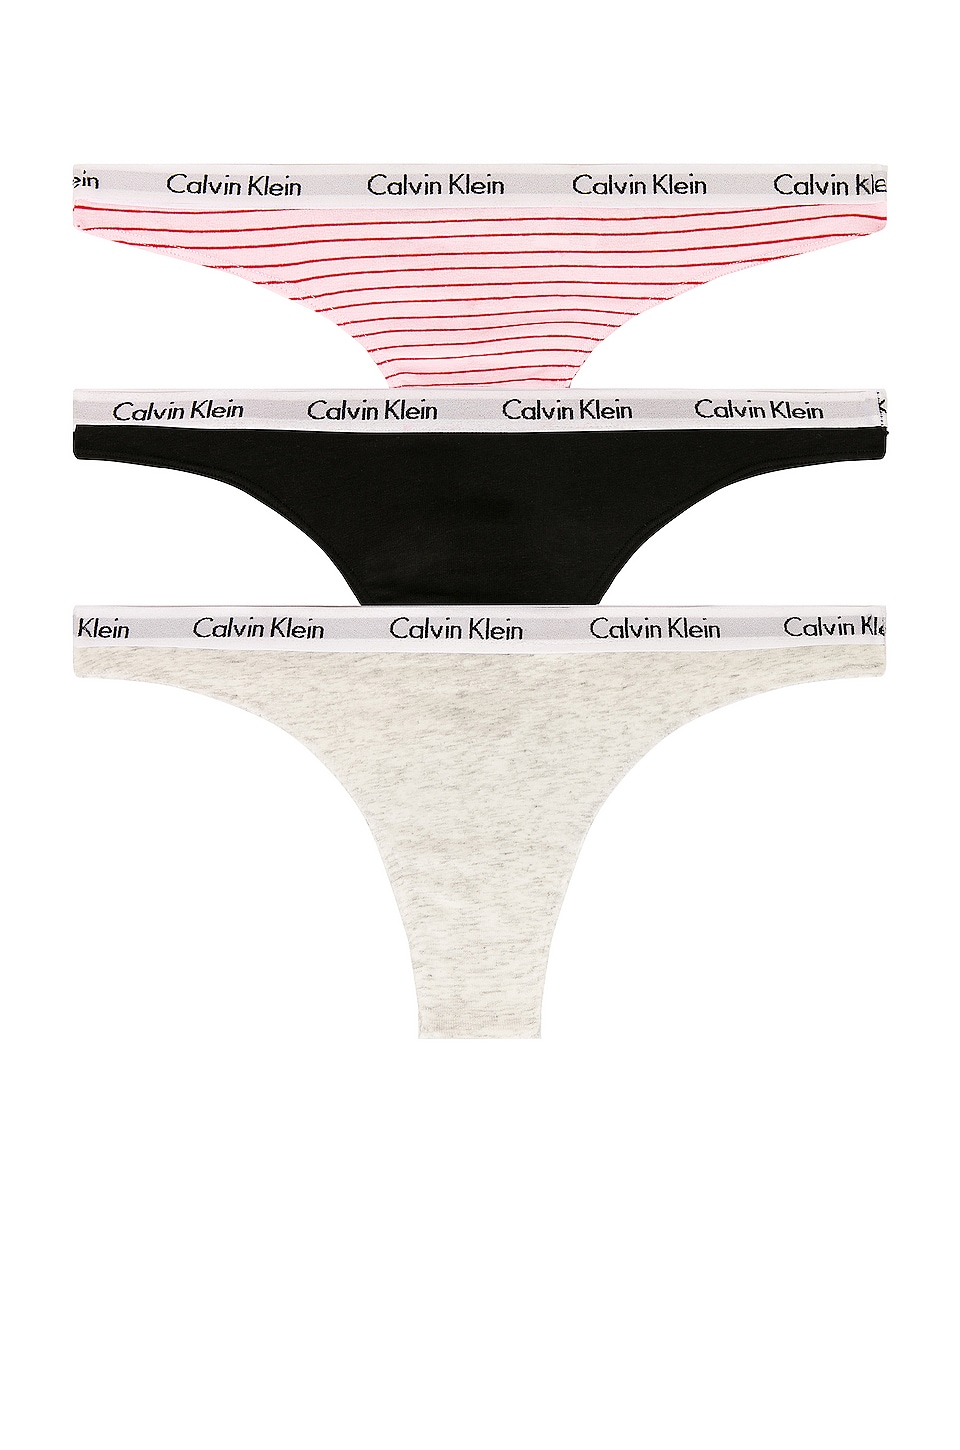 Calvin Klein Underwear Carousel 3 Pack Thong in Feeder Stripe Pale Orchid,  Snow Heather, & Black | REVOLVE